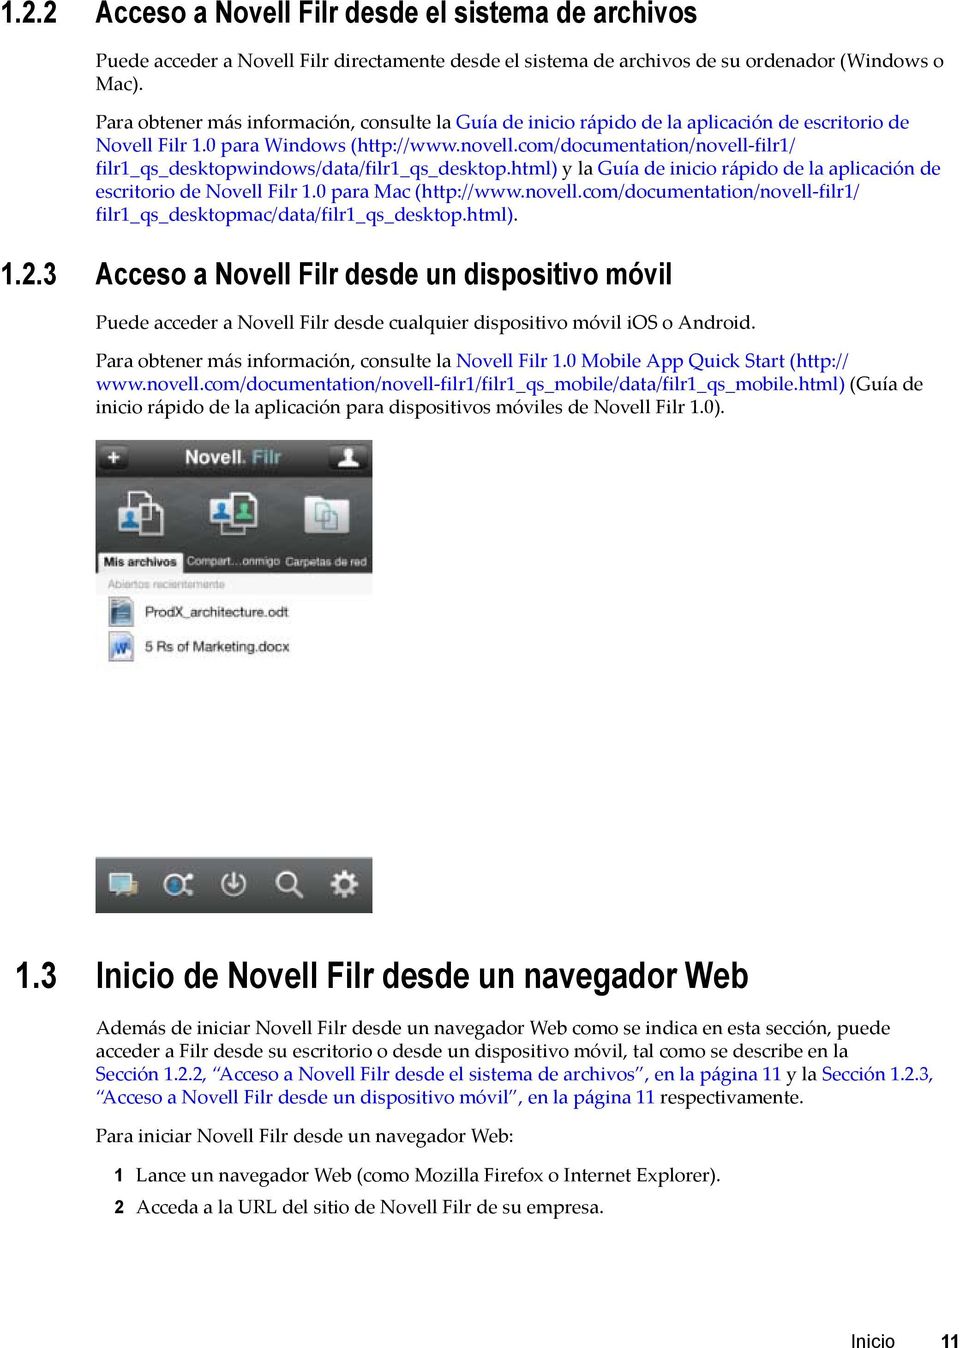 com/documentation/novell-filr1/ filr1_qs_desktopwindows/data/filr1_qs_desktop.html) y la Guía de inicio rápido de la aplicación de escritorio de Novell Filr 1.0 para Mac (http://www.novell.com/documentation/novell-filr1/ filr1_qs_desktopmac/data/filr1_qs_desktop.